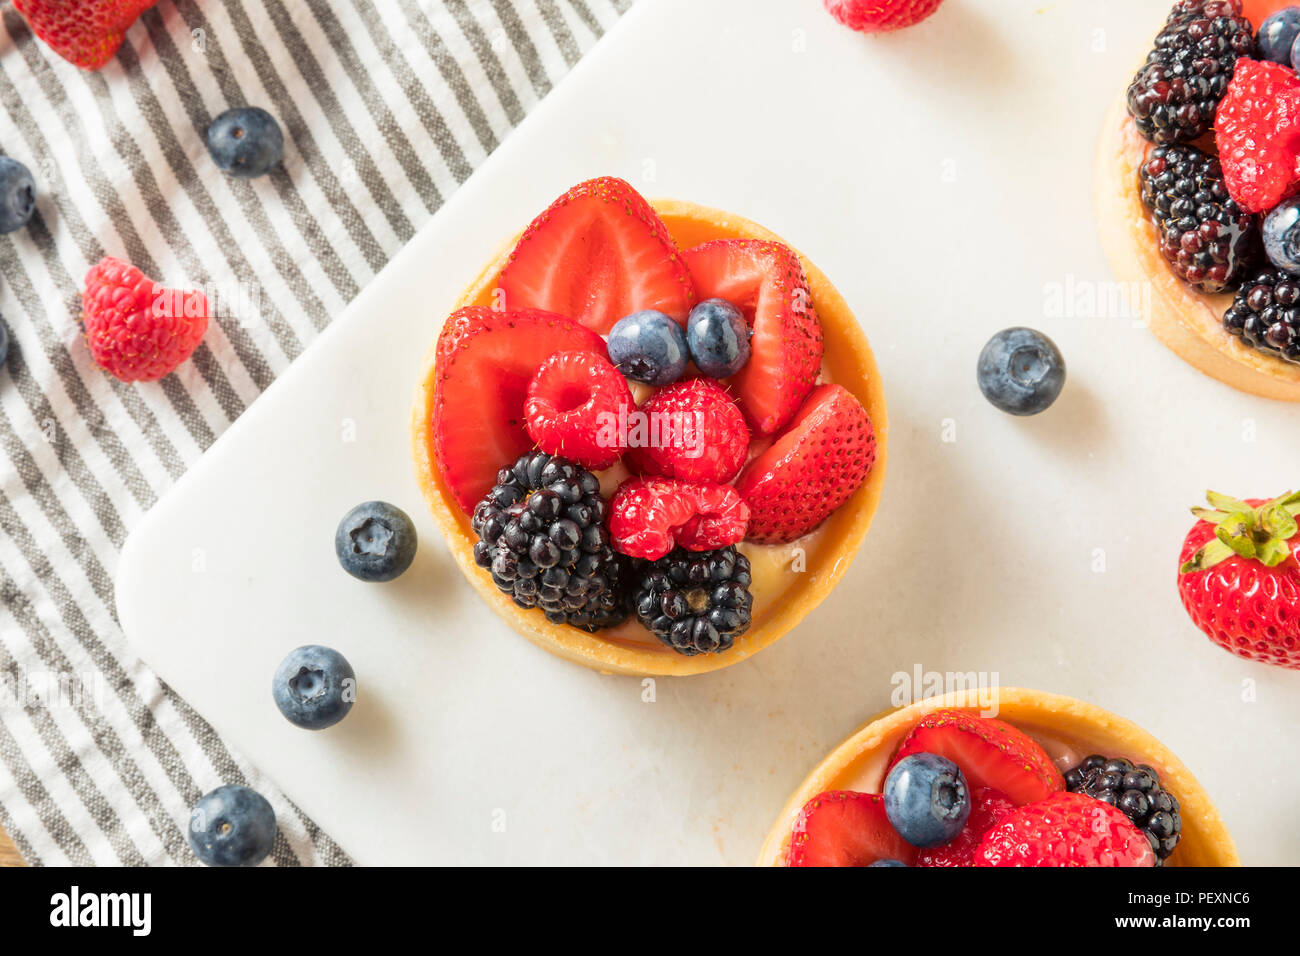 In casa crostata di frutta pasticceria con crema pasticcera e frutti di bosco Foto Stock